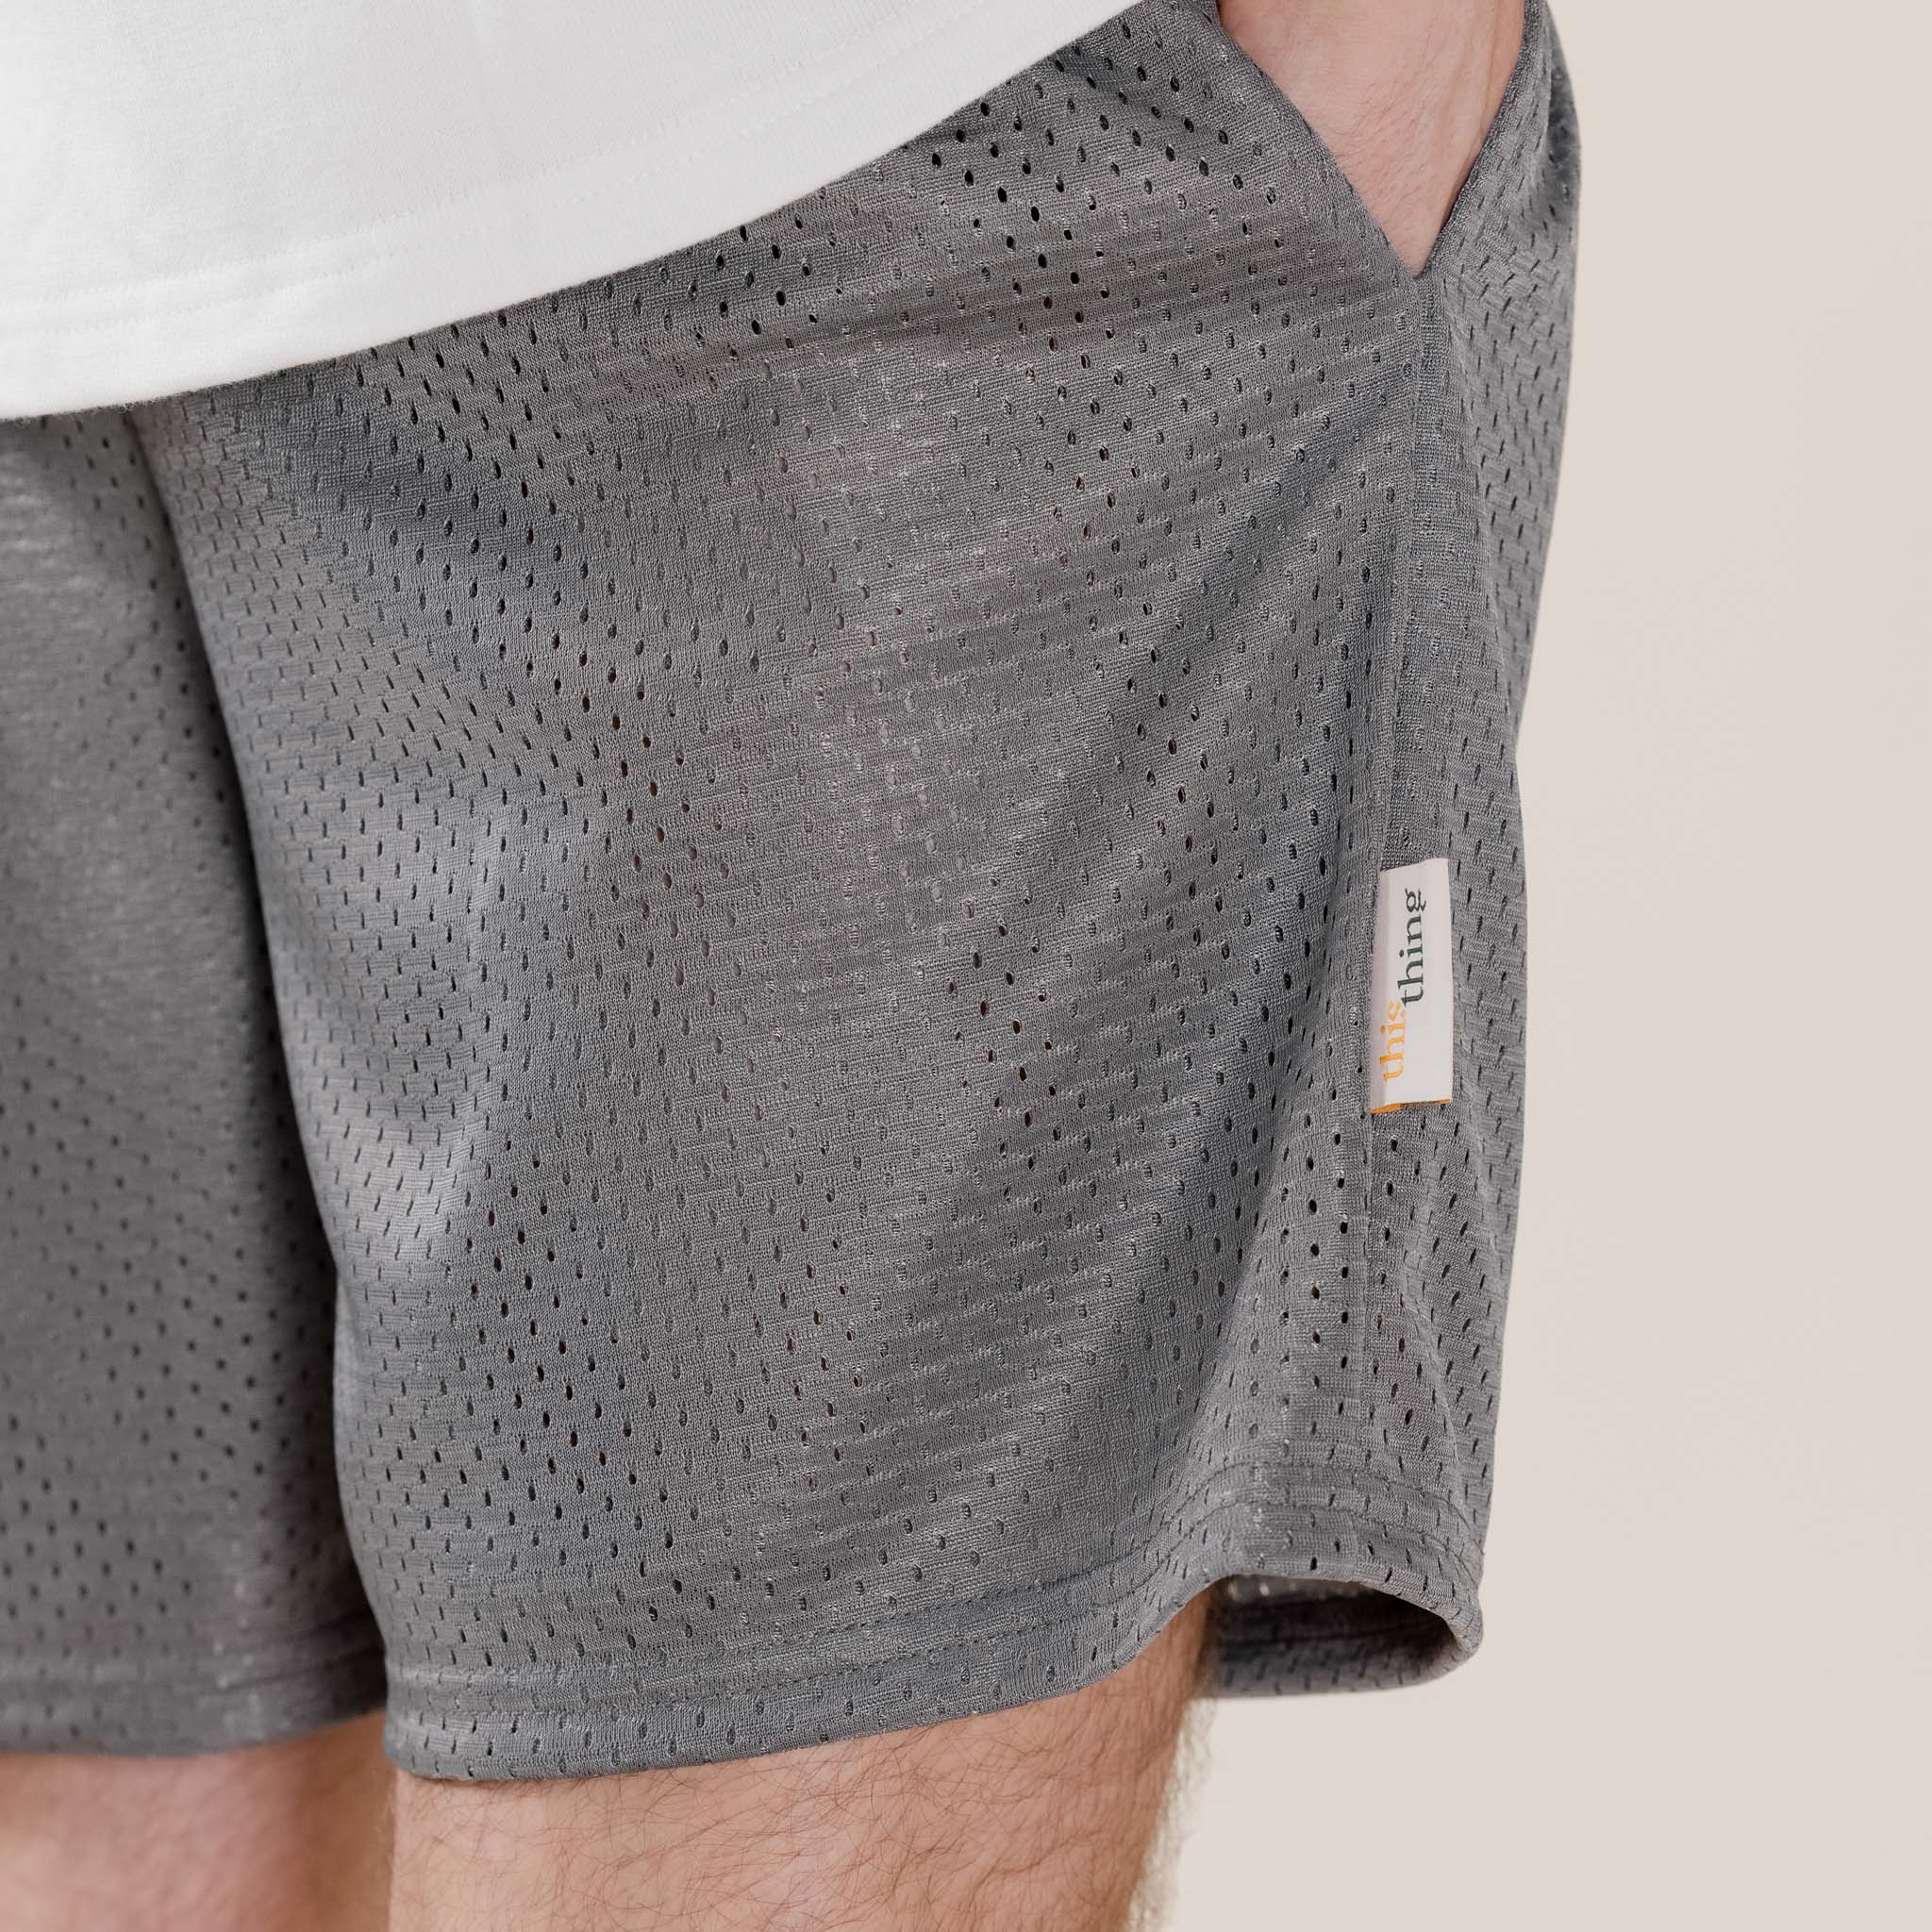 This Thing - Made in USA Mesh Shorts - Athletic Grey Basketball Mesh Shorts